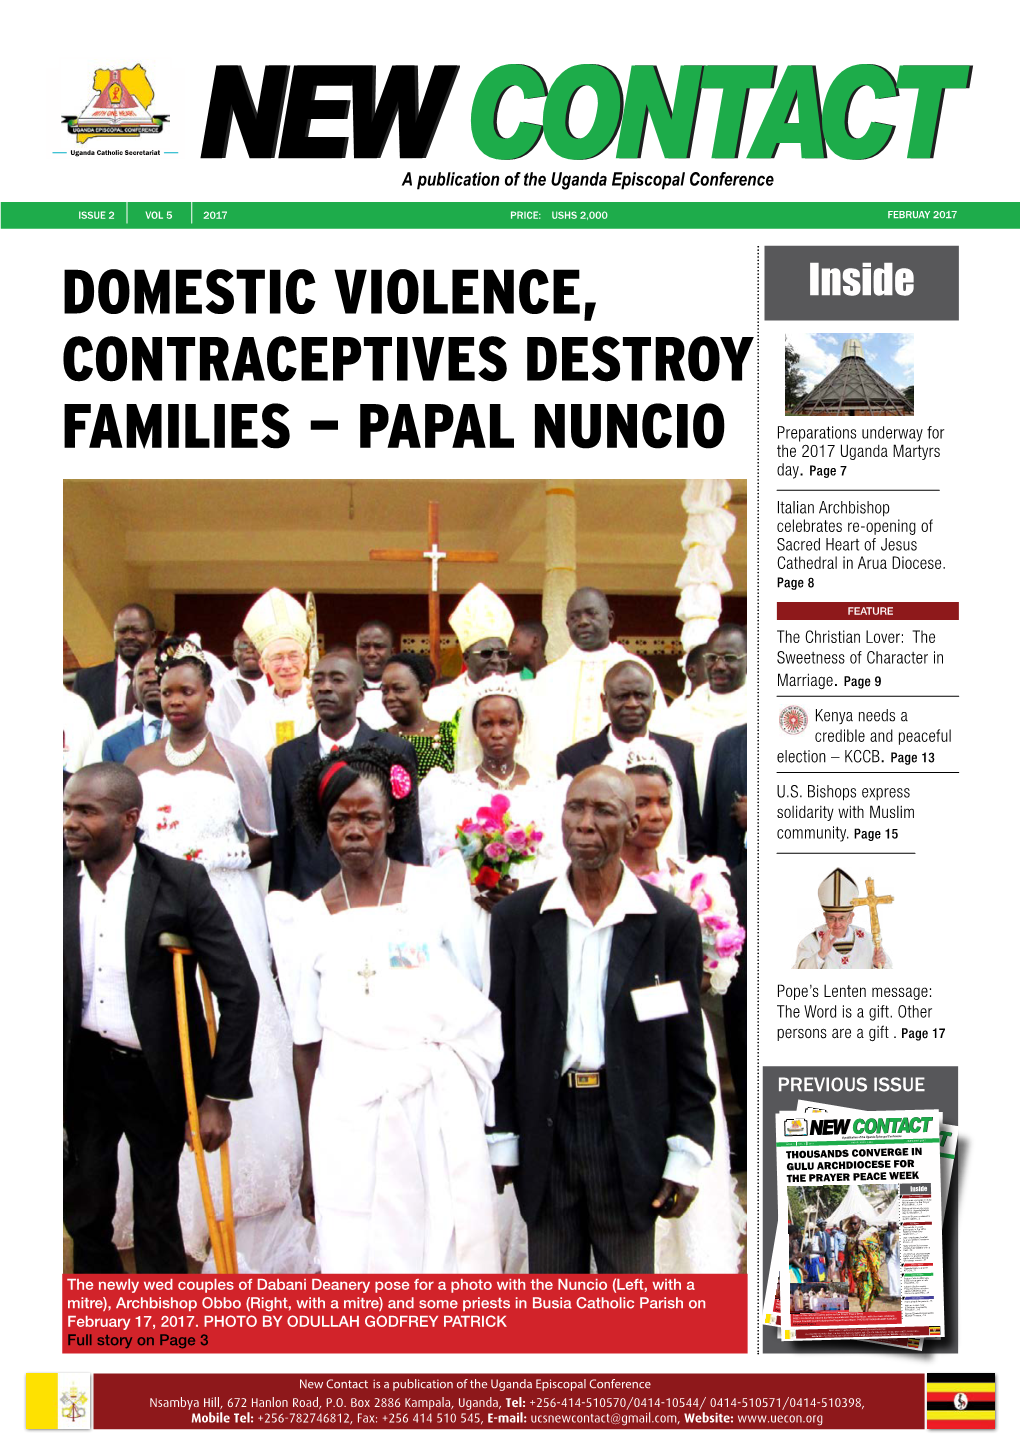 PAPAL NUNCIO the 2017 Uganda Martyrs Day